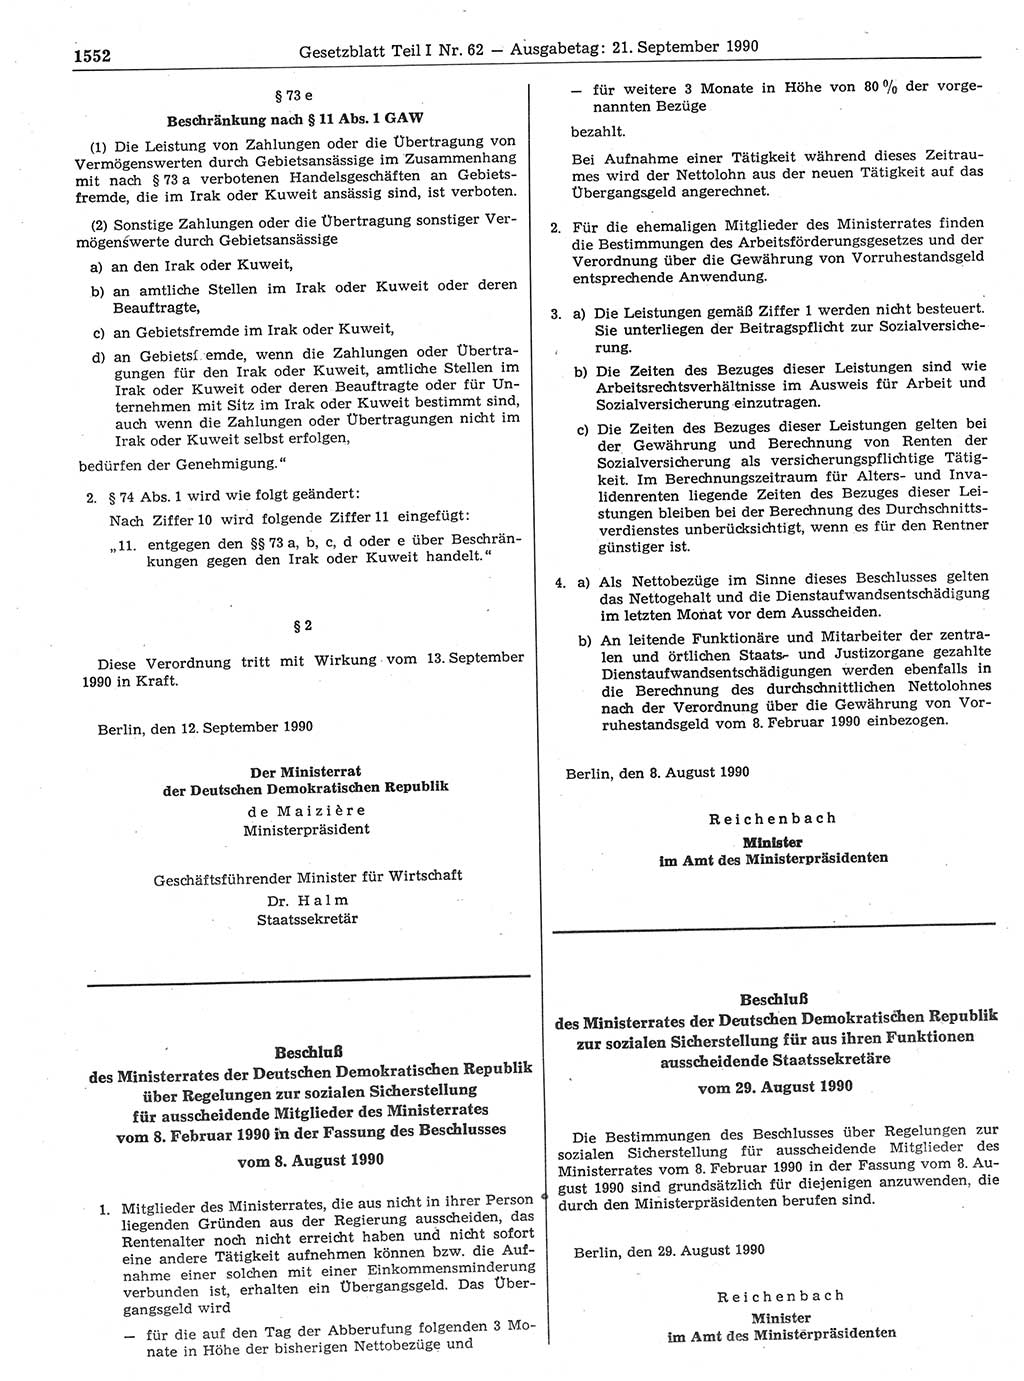 Gesetzblatt (GBl.) der Deutschen Demokratischen Republik (DDR) Teil Ⅰ 1990, Seite 1552 (GBl. DDR Ⅰ 1990, S. 1552)